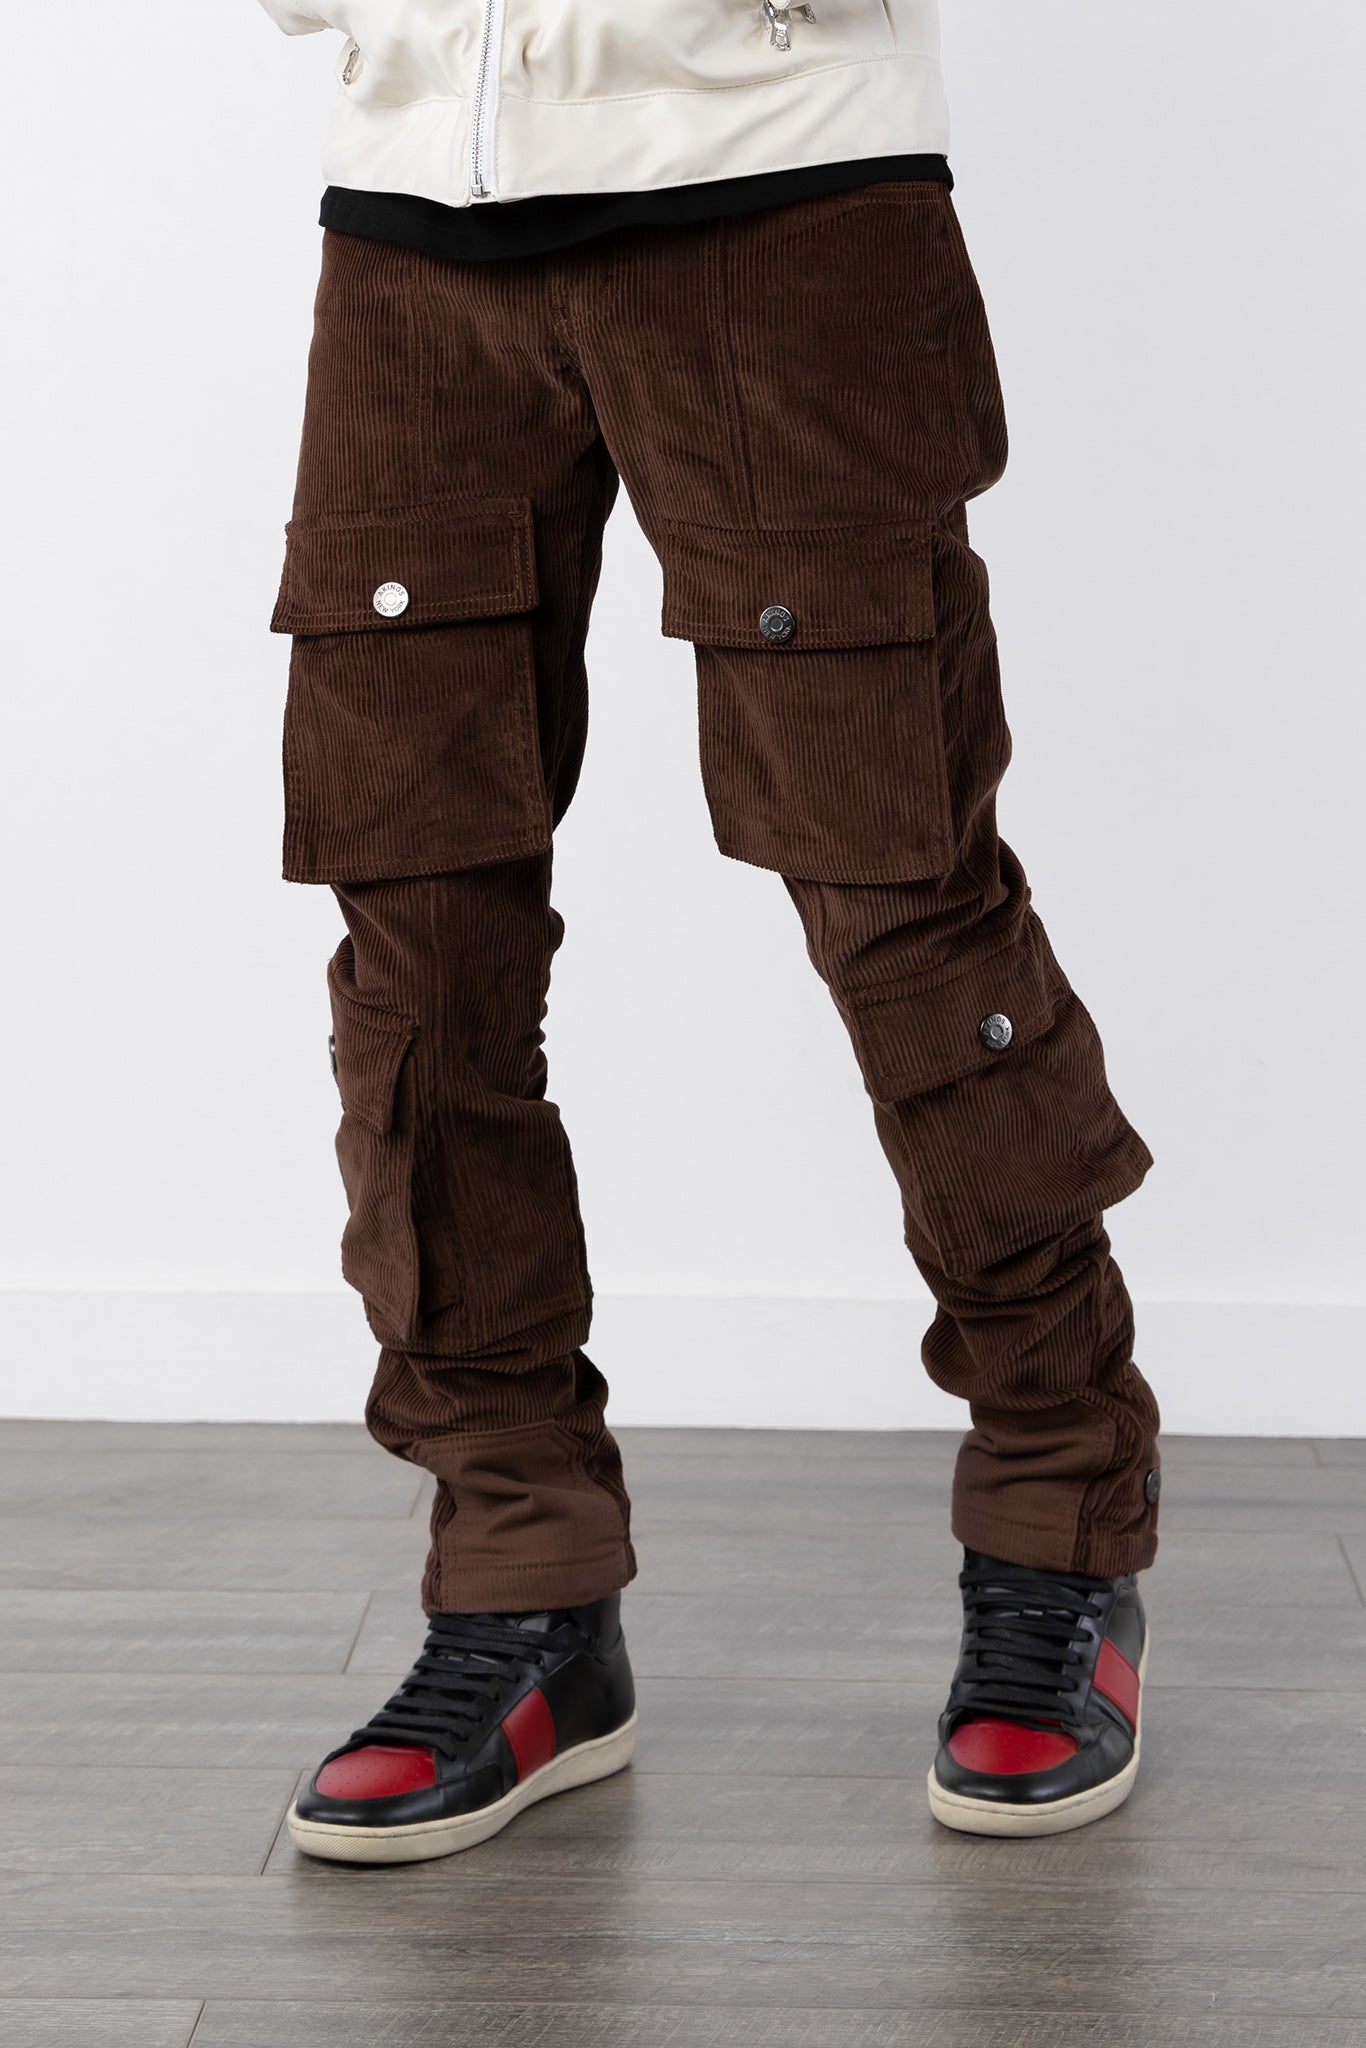 Regular Fit Ripstop Cargo Pants - Dark brown - Men | H&M US